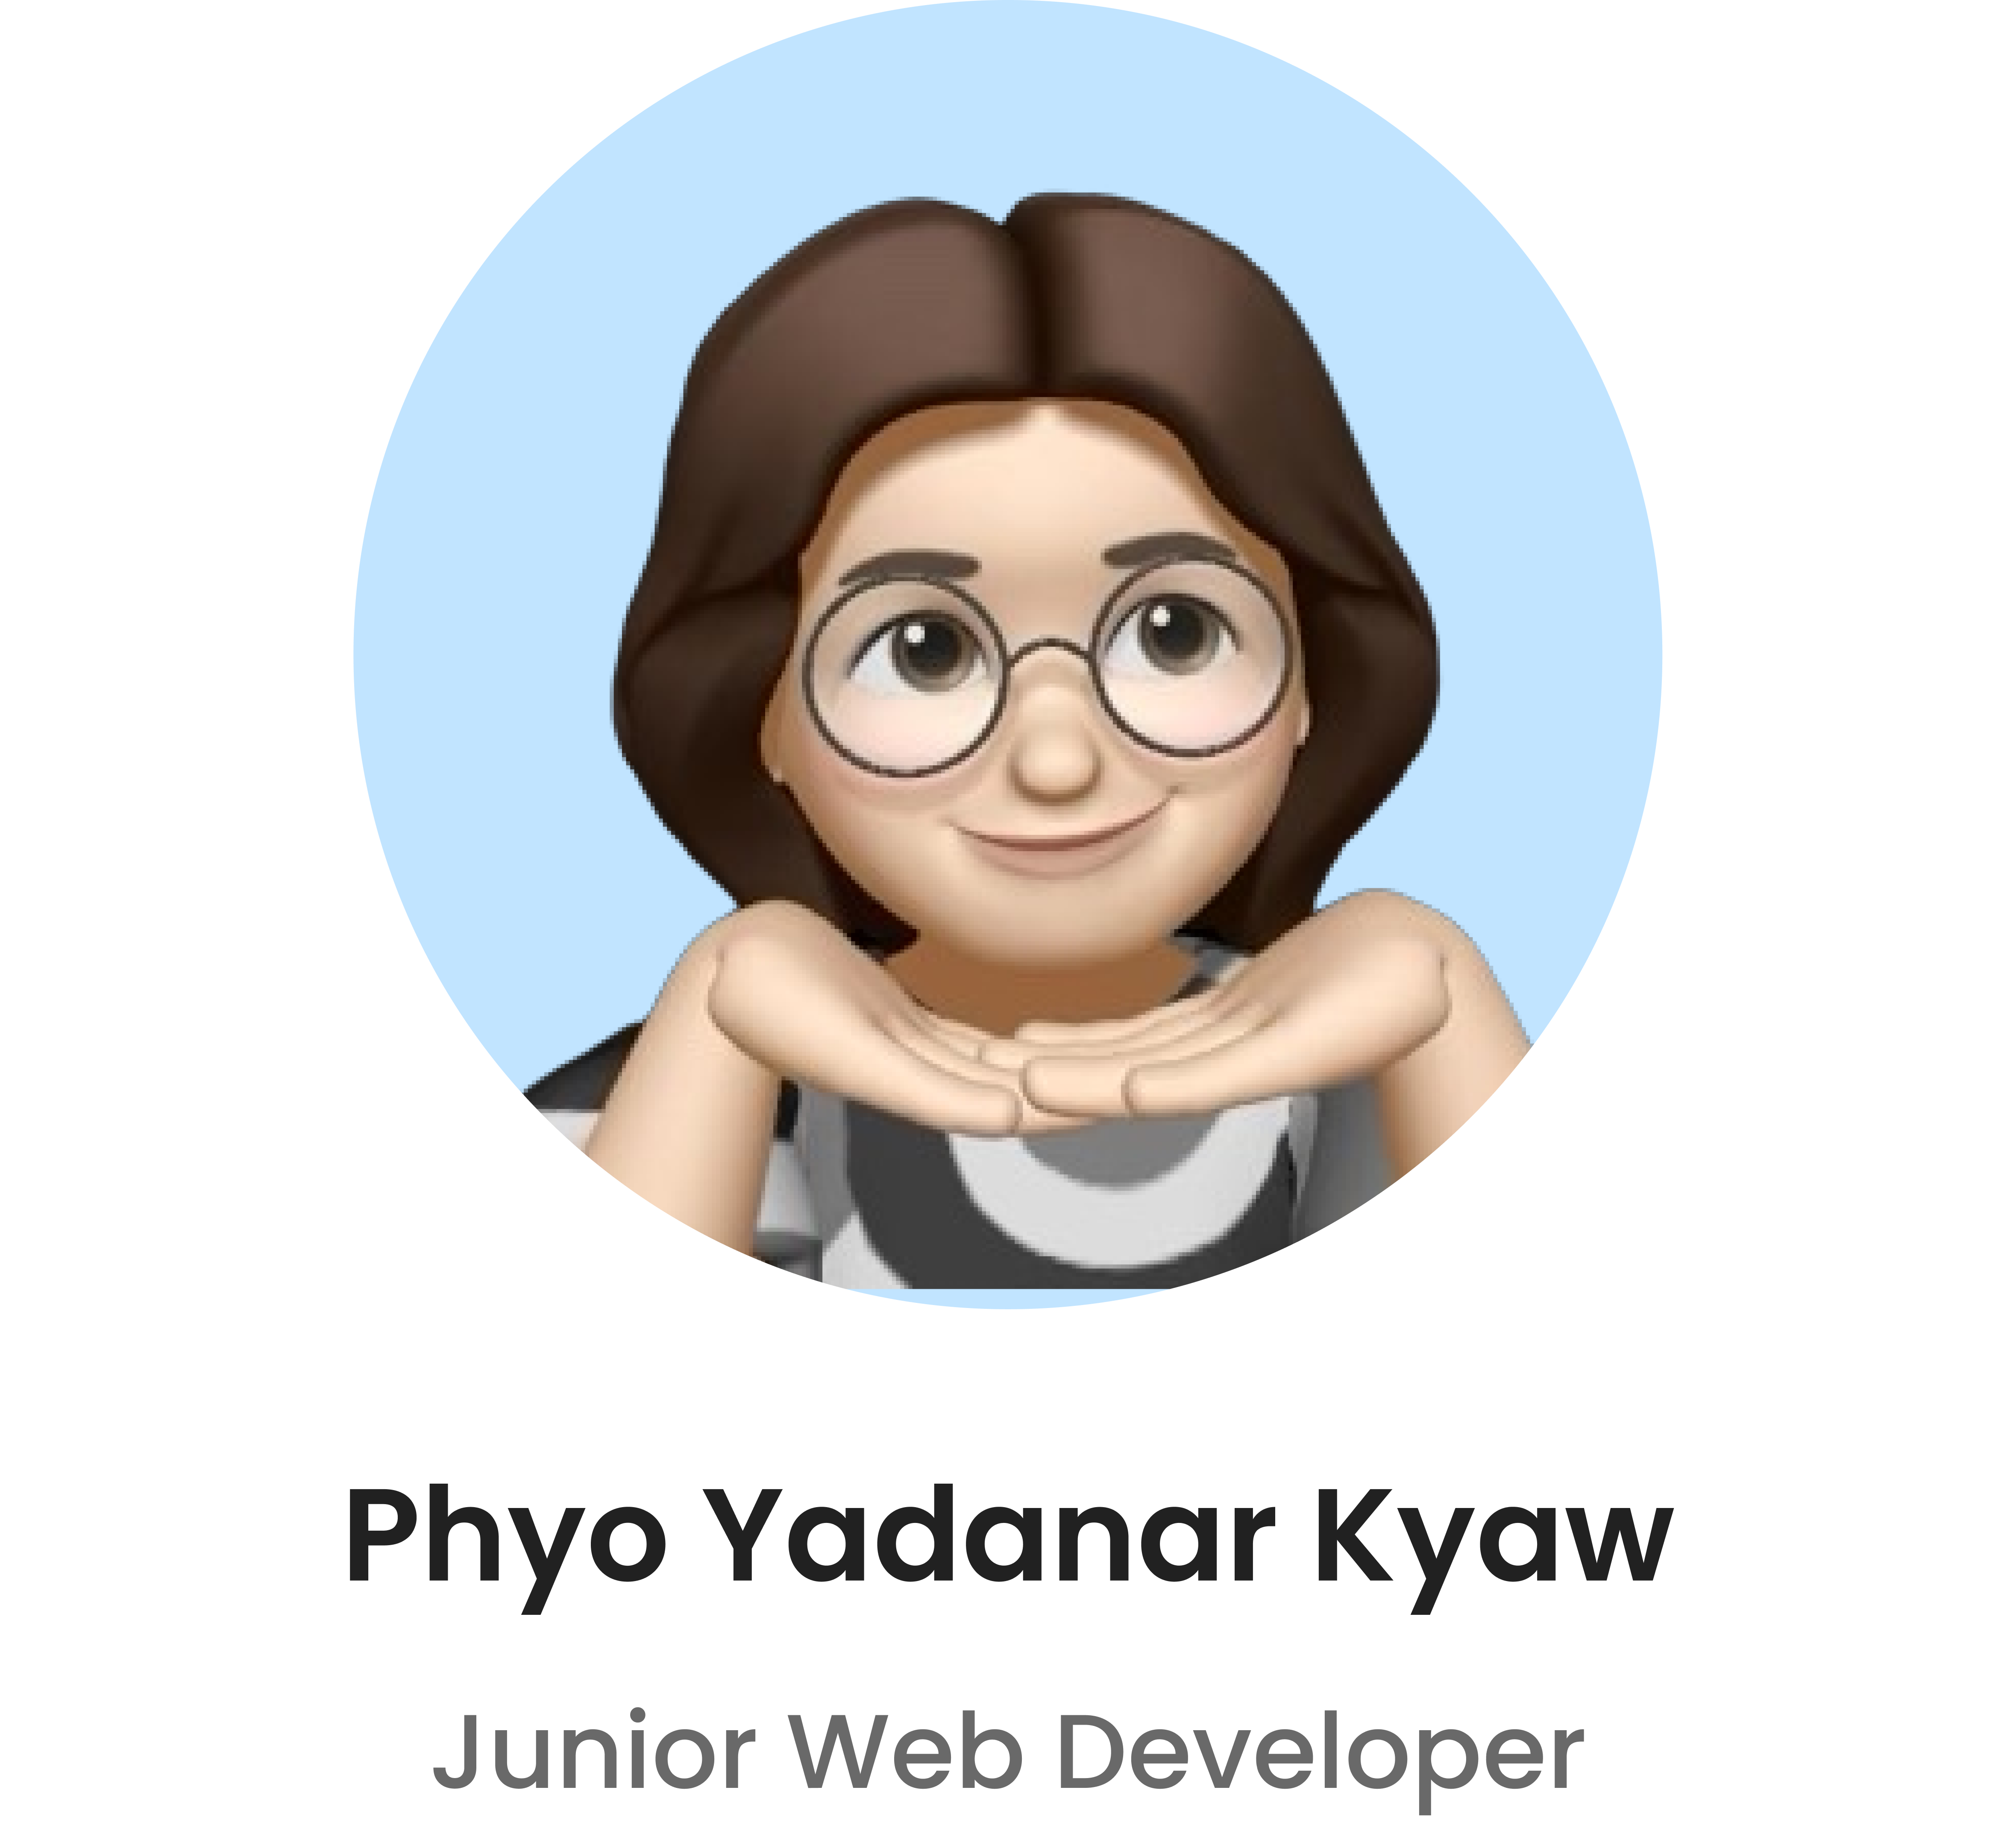 Phyo Yadanar Kyaw 